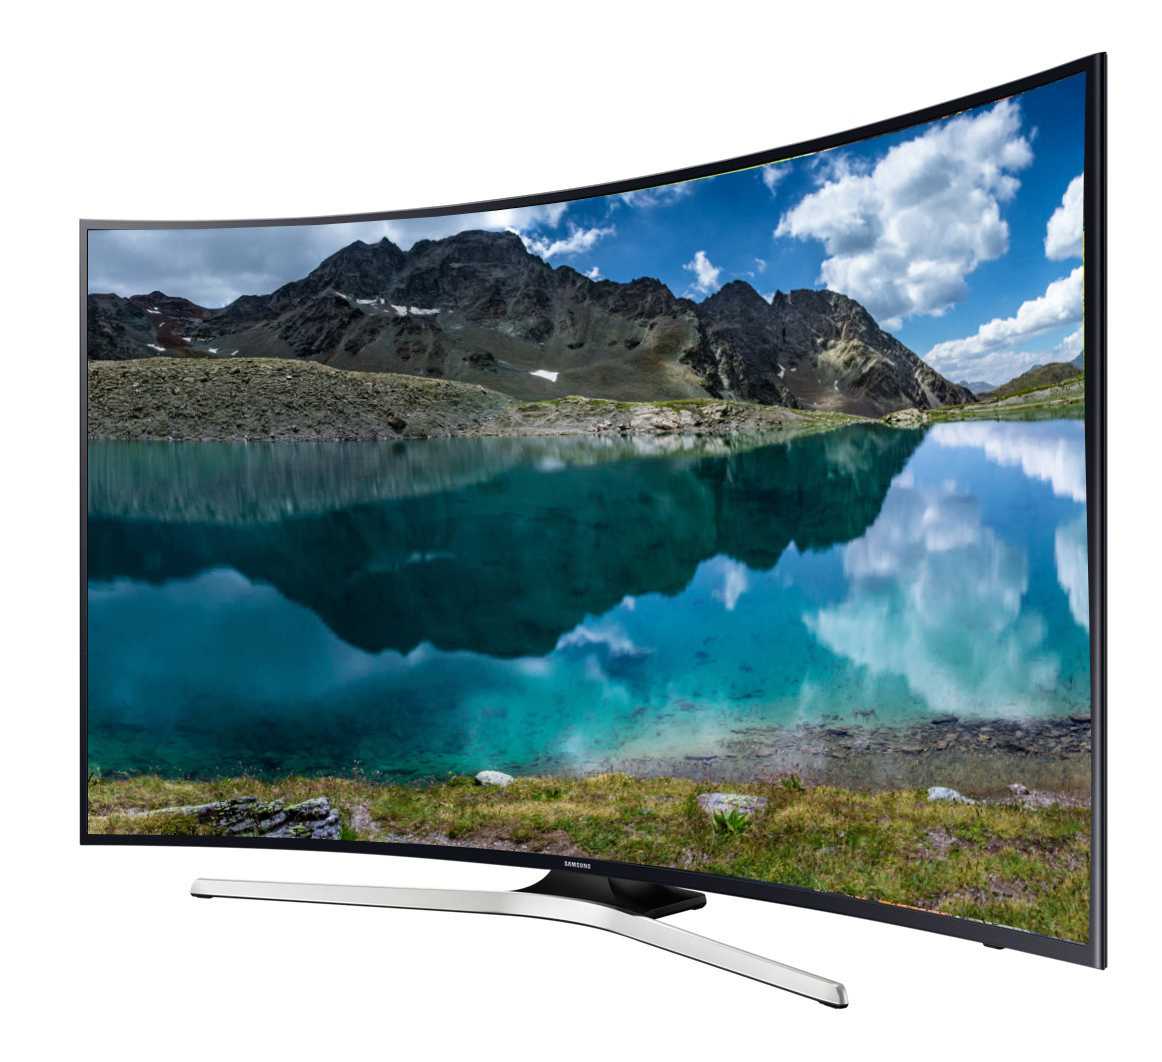 Samsung ue48h6500 - купить , скидки, цена, отзывы, обзор, характеристики - телевизоры